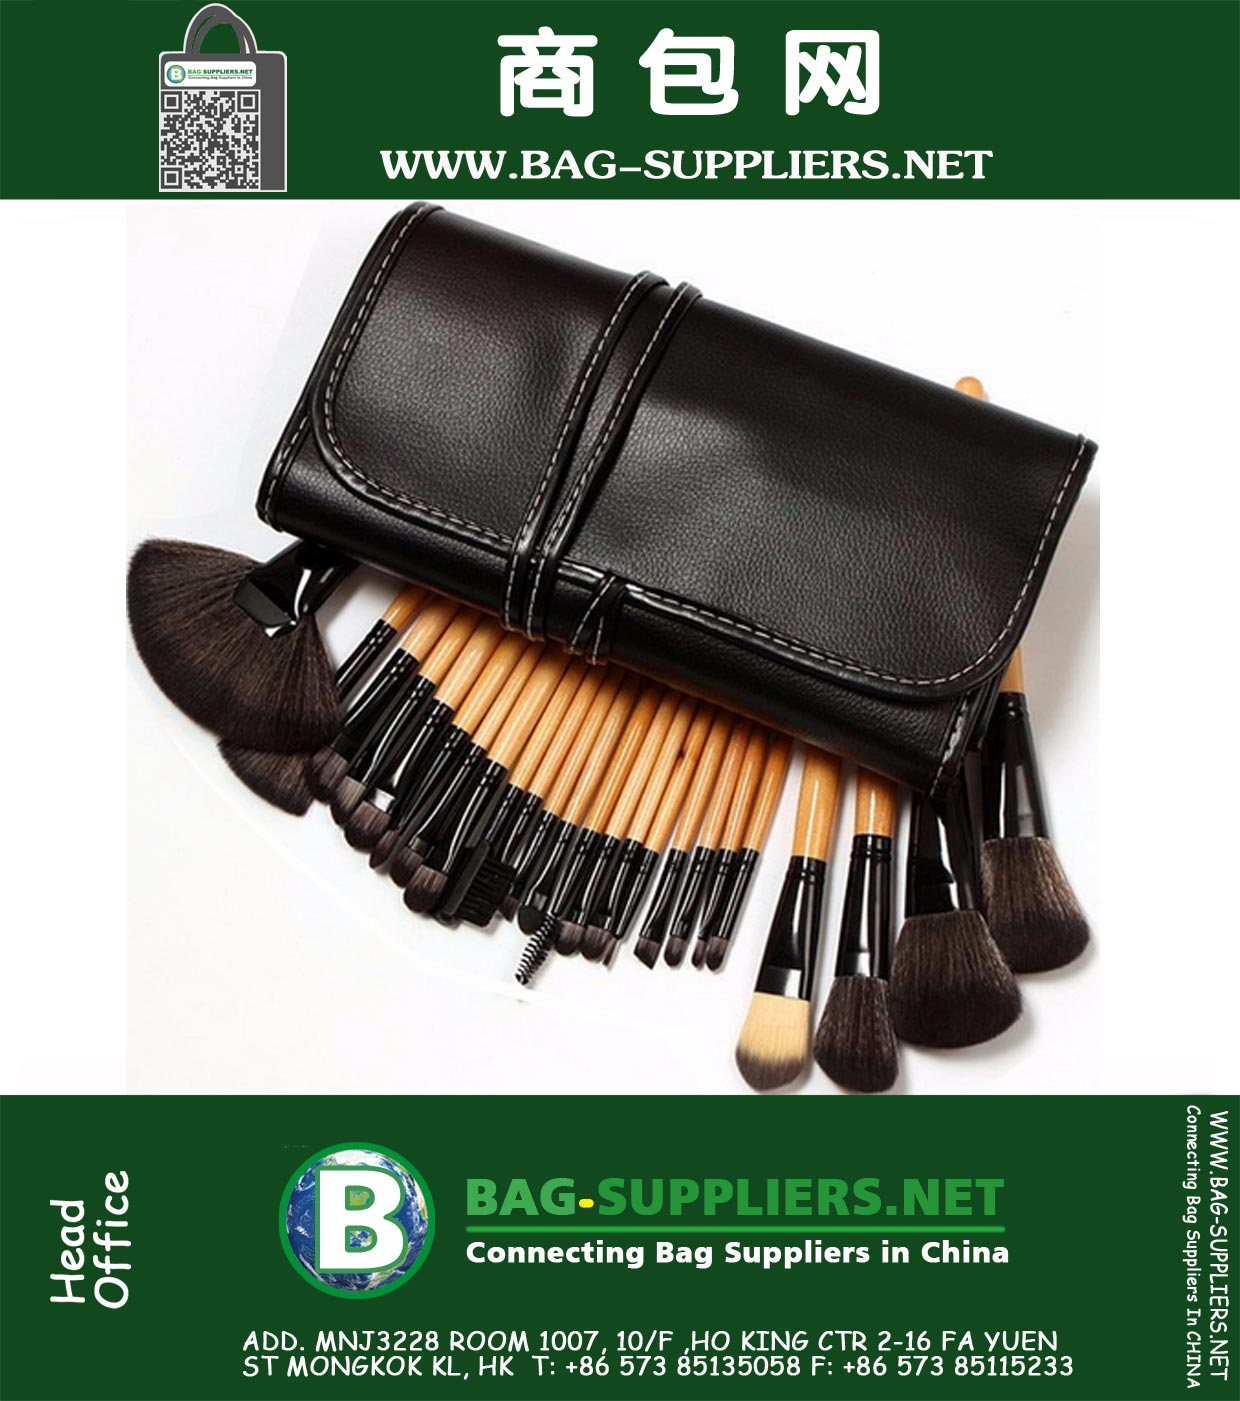 32pcs mis en brosse de maquillage professionnel doux cosmétiques Addbeauty pinceau de maquillage Top qualité Make Up Tool Kit Sac pochette